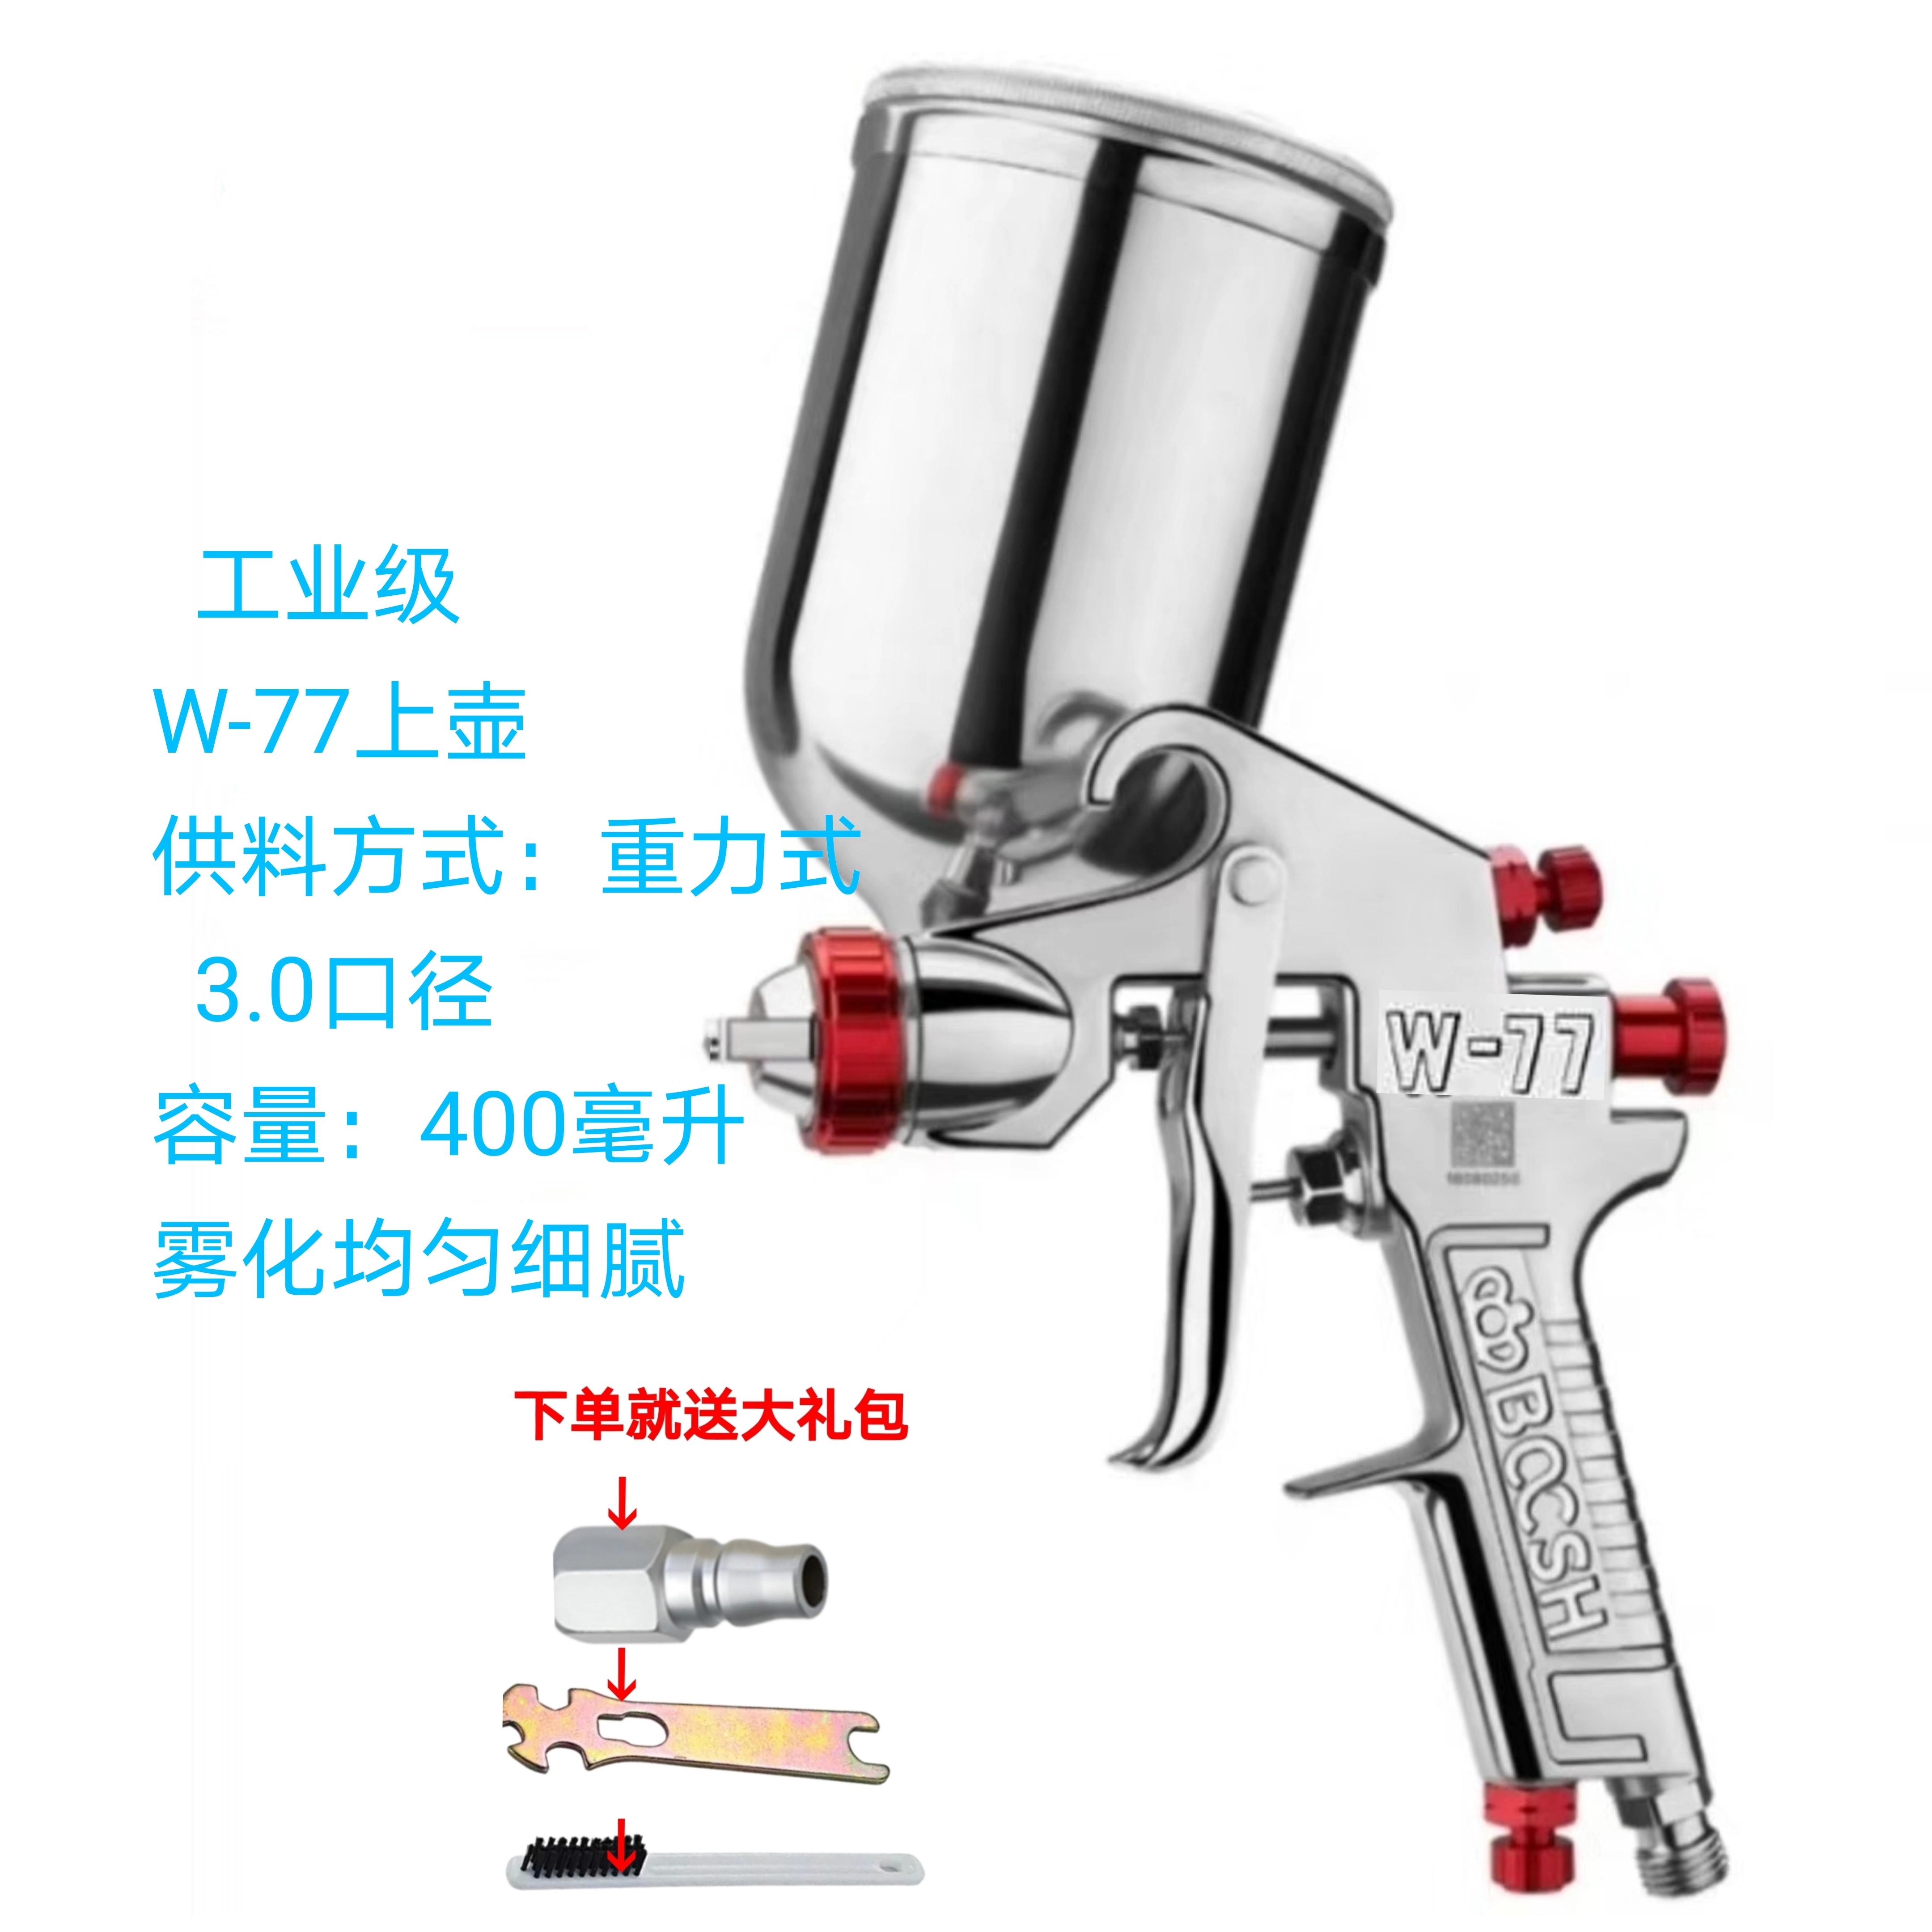 súng phun sơn không ra sơn Súng phun sơn nồi trên và dưới của Đài Loan Dr. W-71/W-77 có độ phun sơn cao cho đồ gỗ nội thất súng phun sơn ô tô súng sơn giá rẻ súng sơn điện 